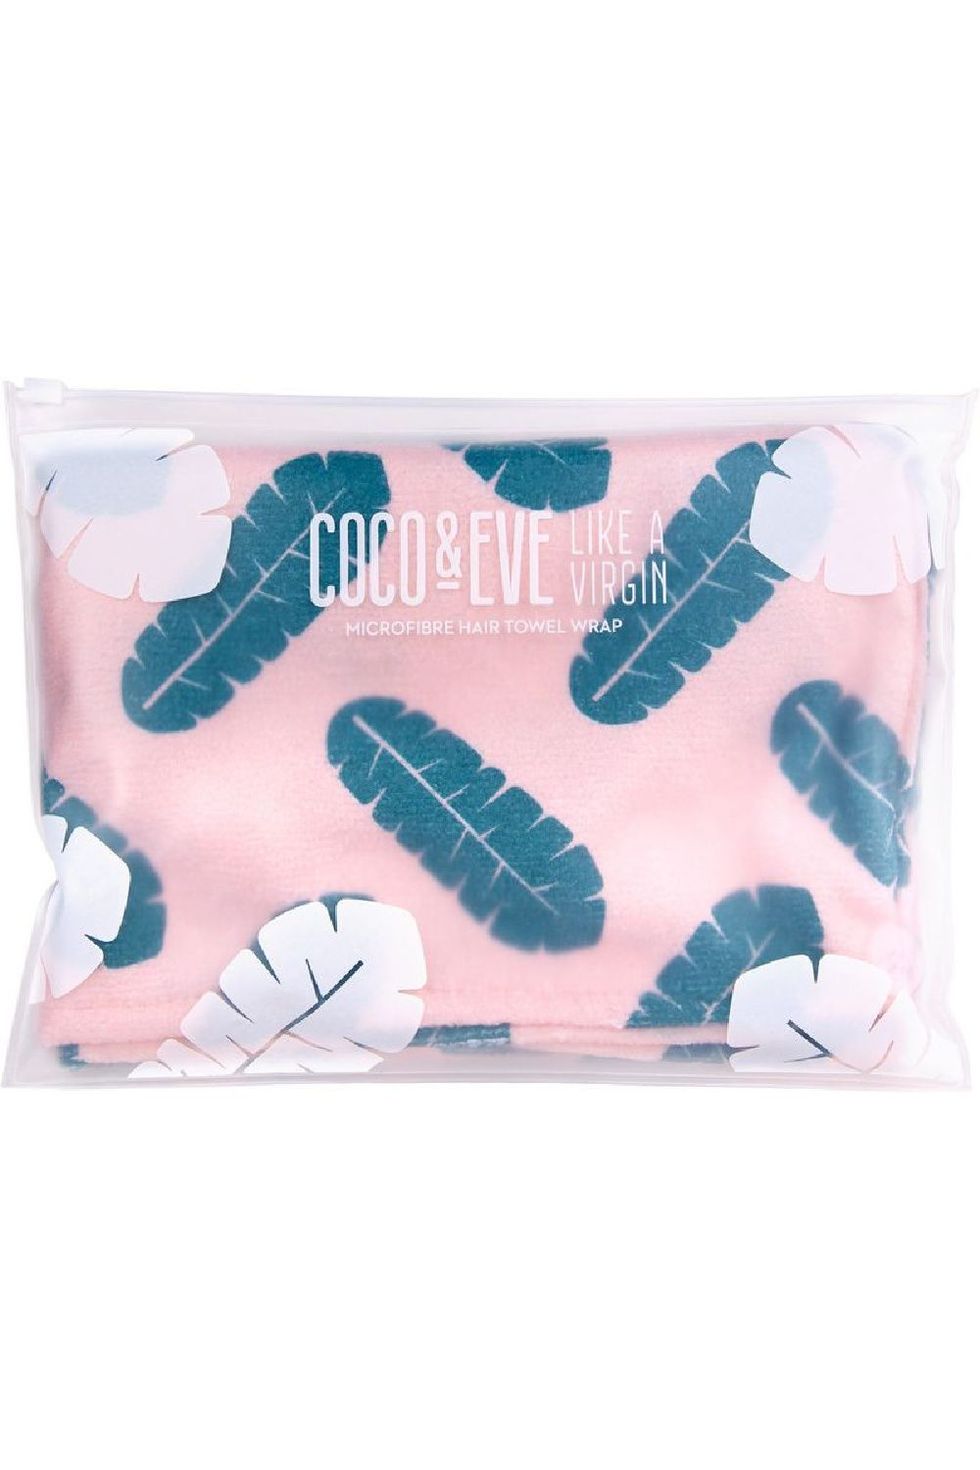 Coco & Eve Microfibre Towel Wrap